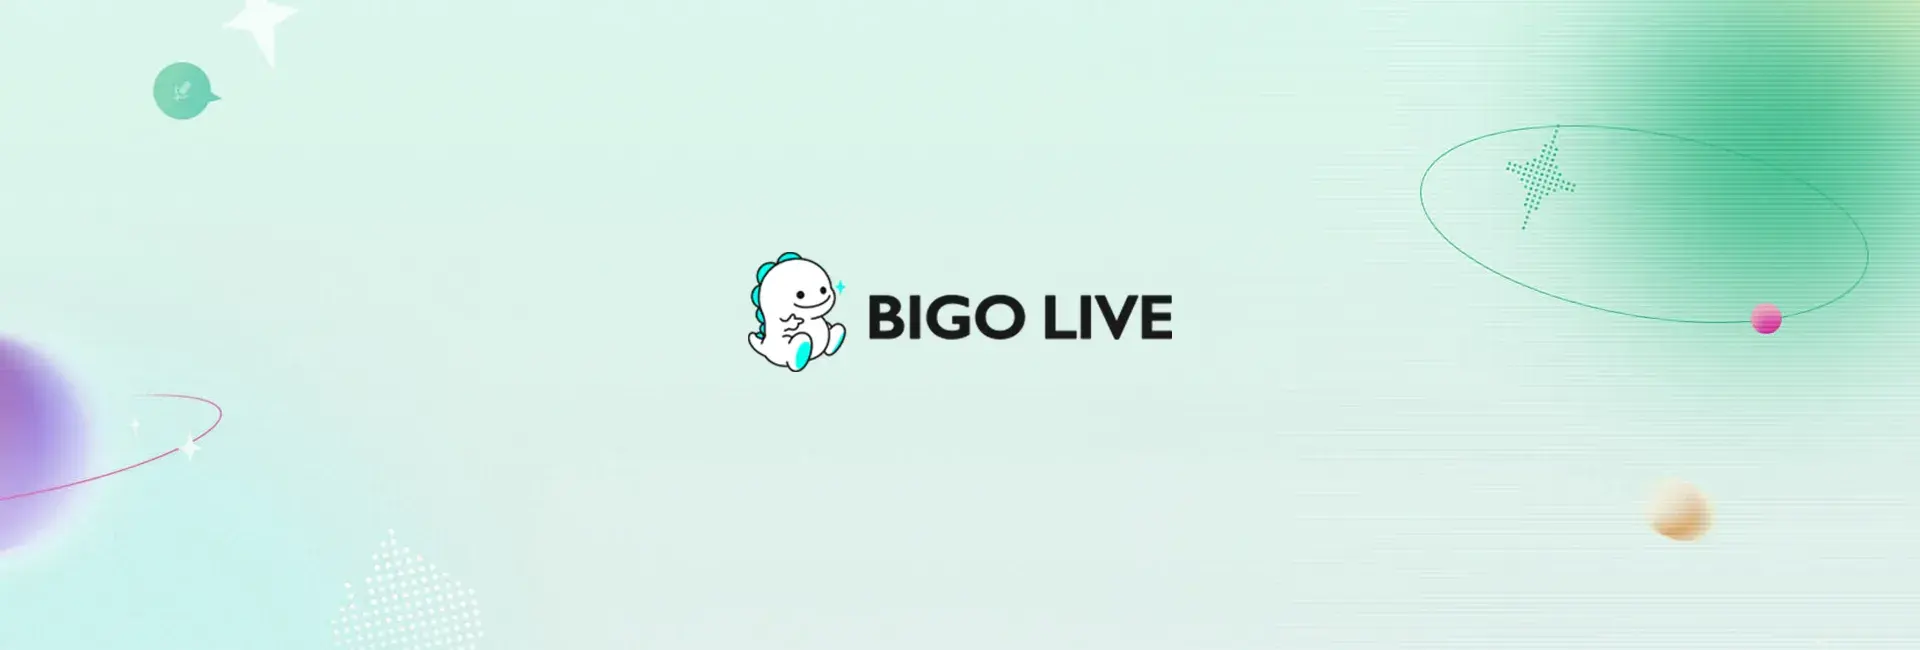 Bigo Live - 3060 Diamonds (Global)	